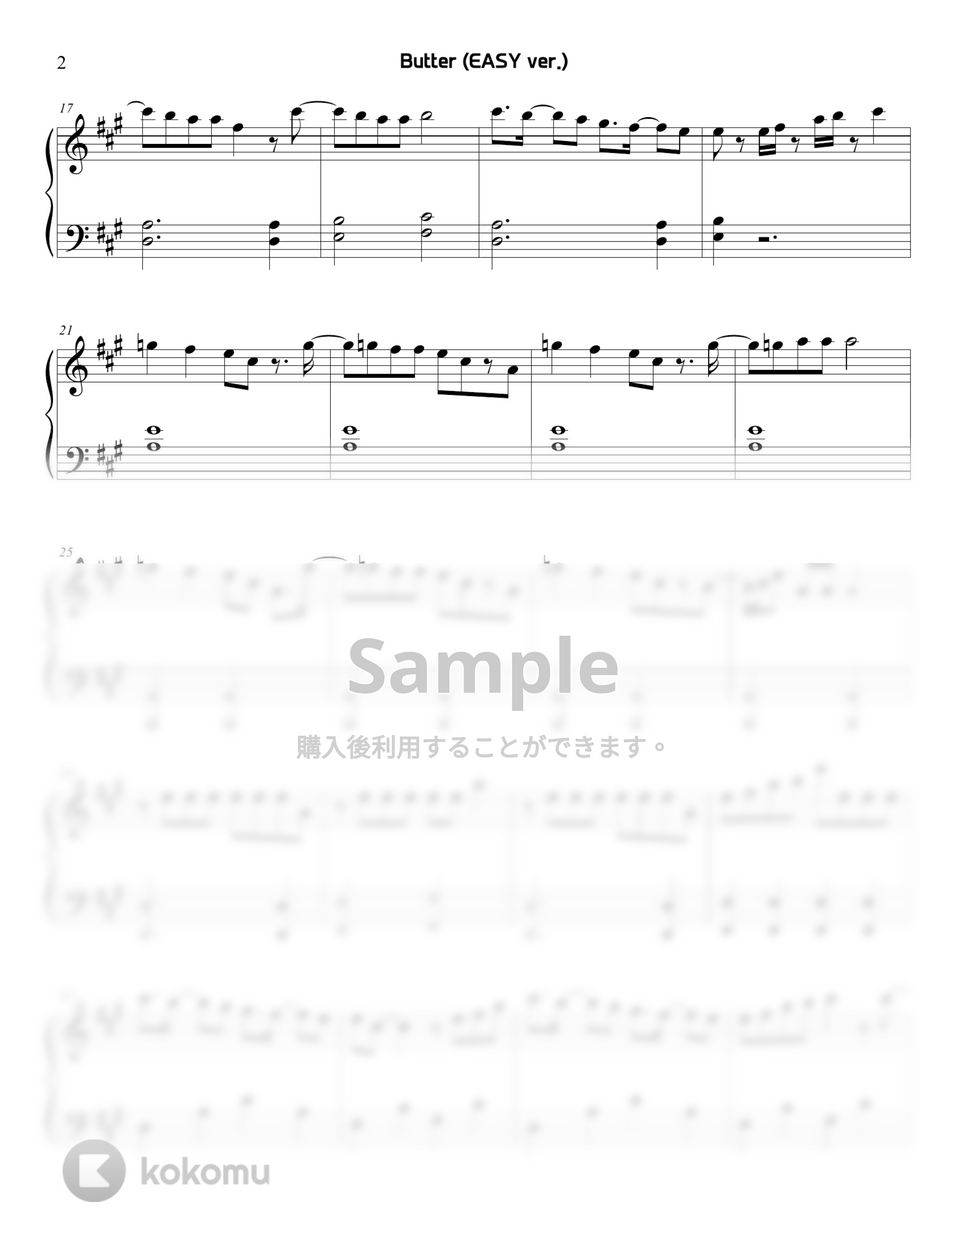 防弾少年団(BTS) - Butter (EASY) by Sunny Fingers Piano